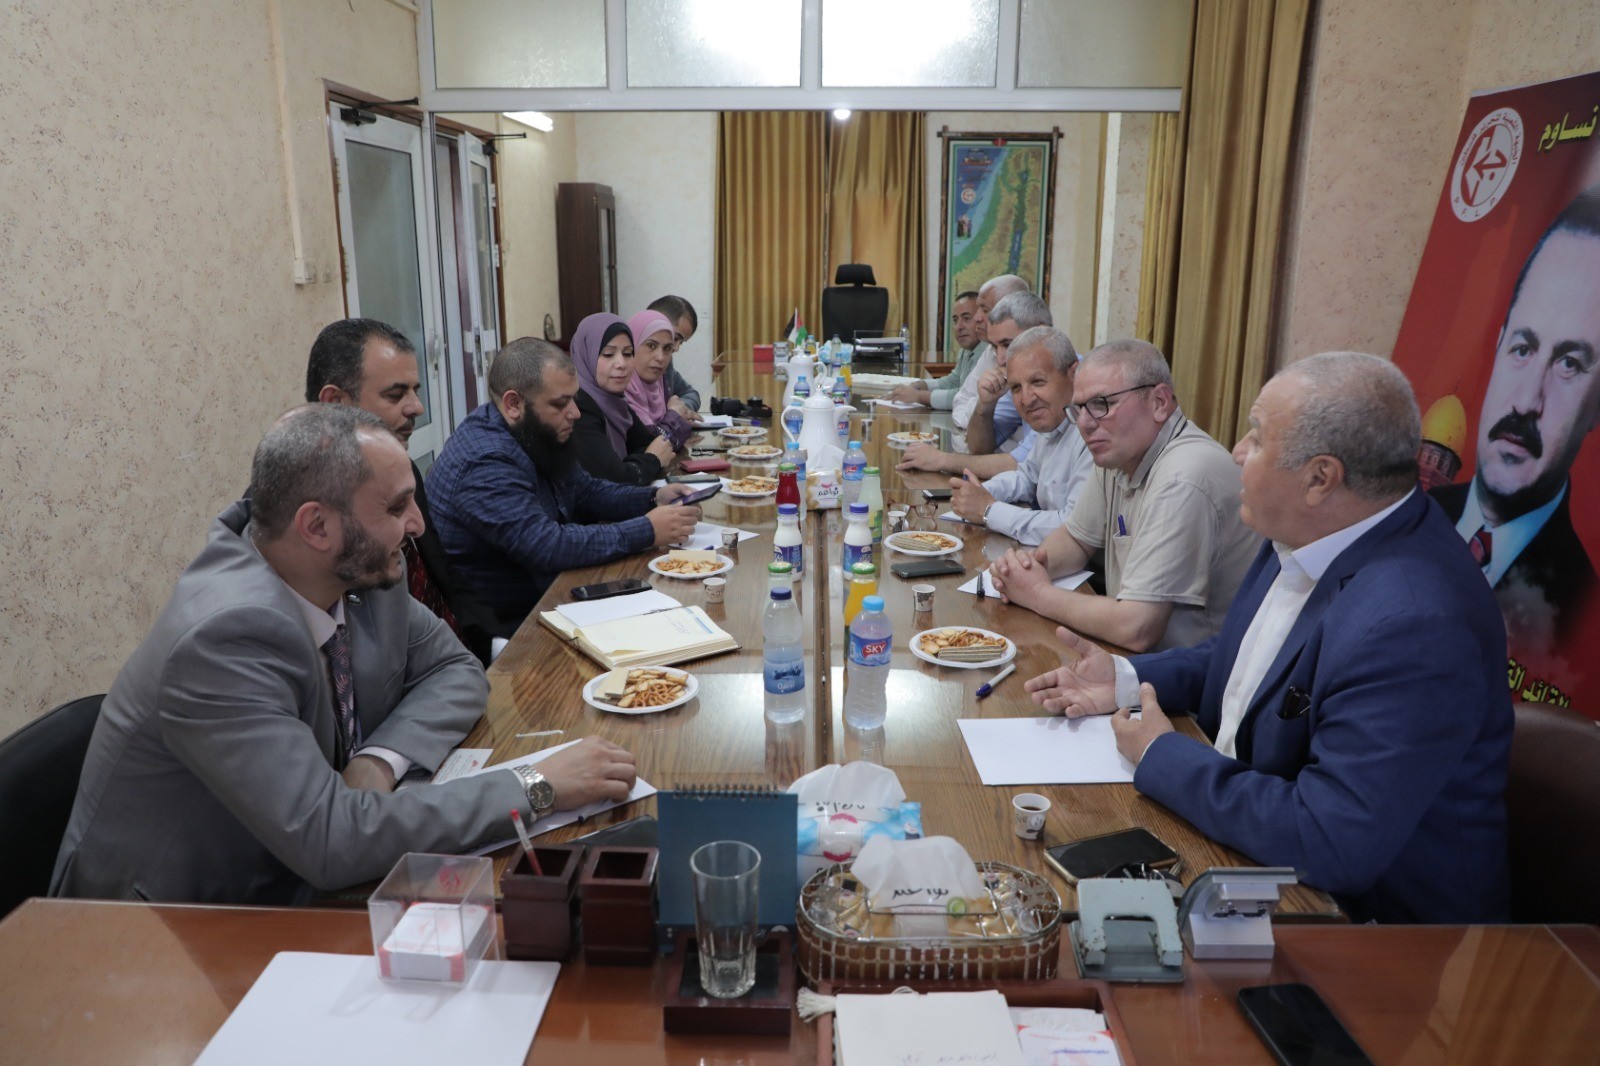 لجنة العمل النقابي في الجبهة الشعبية تستقبل وفدًا من وزارة العمل بغزة 2.jpg